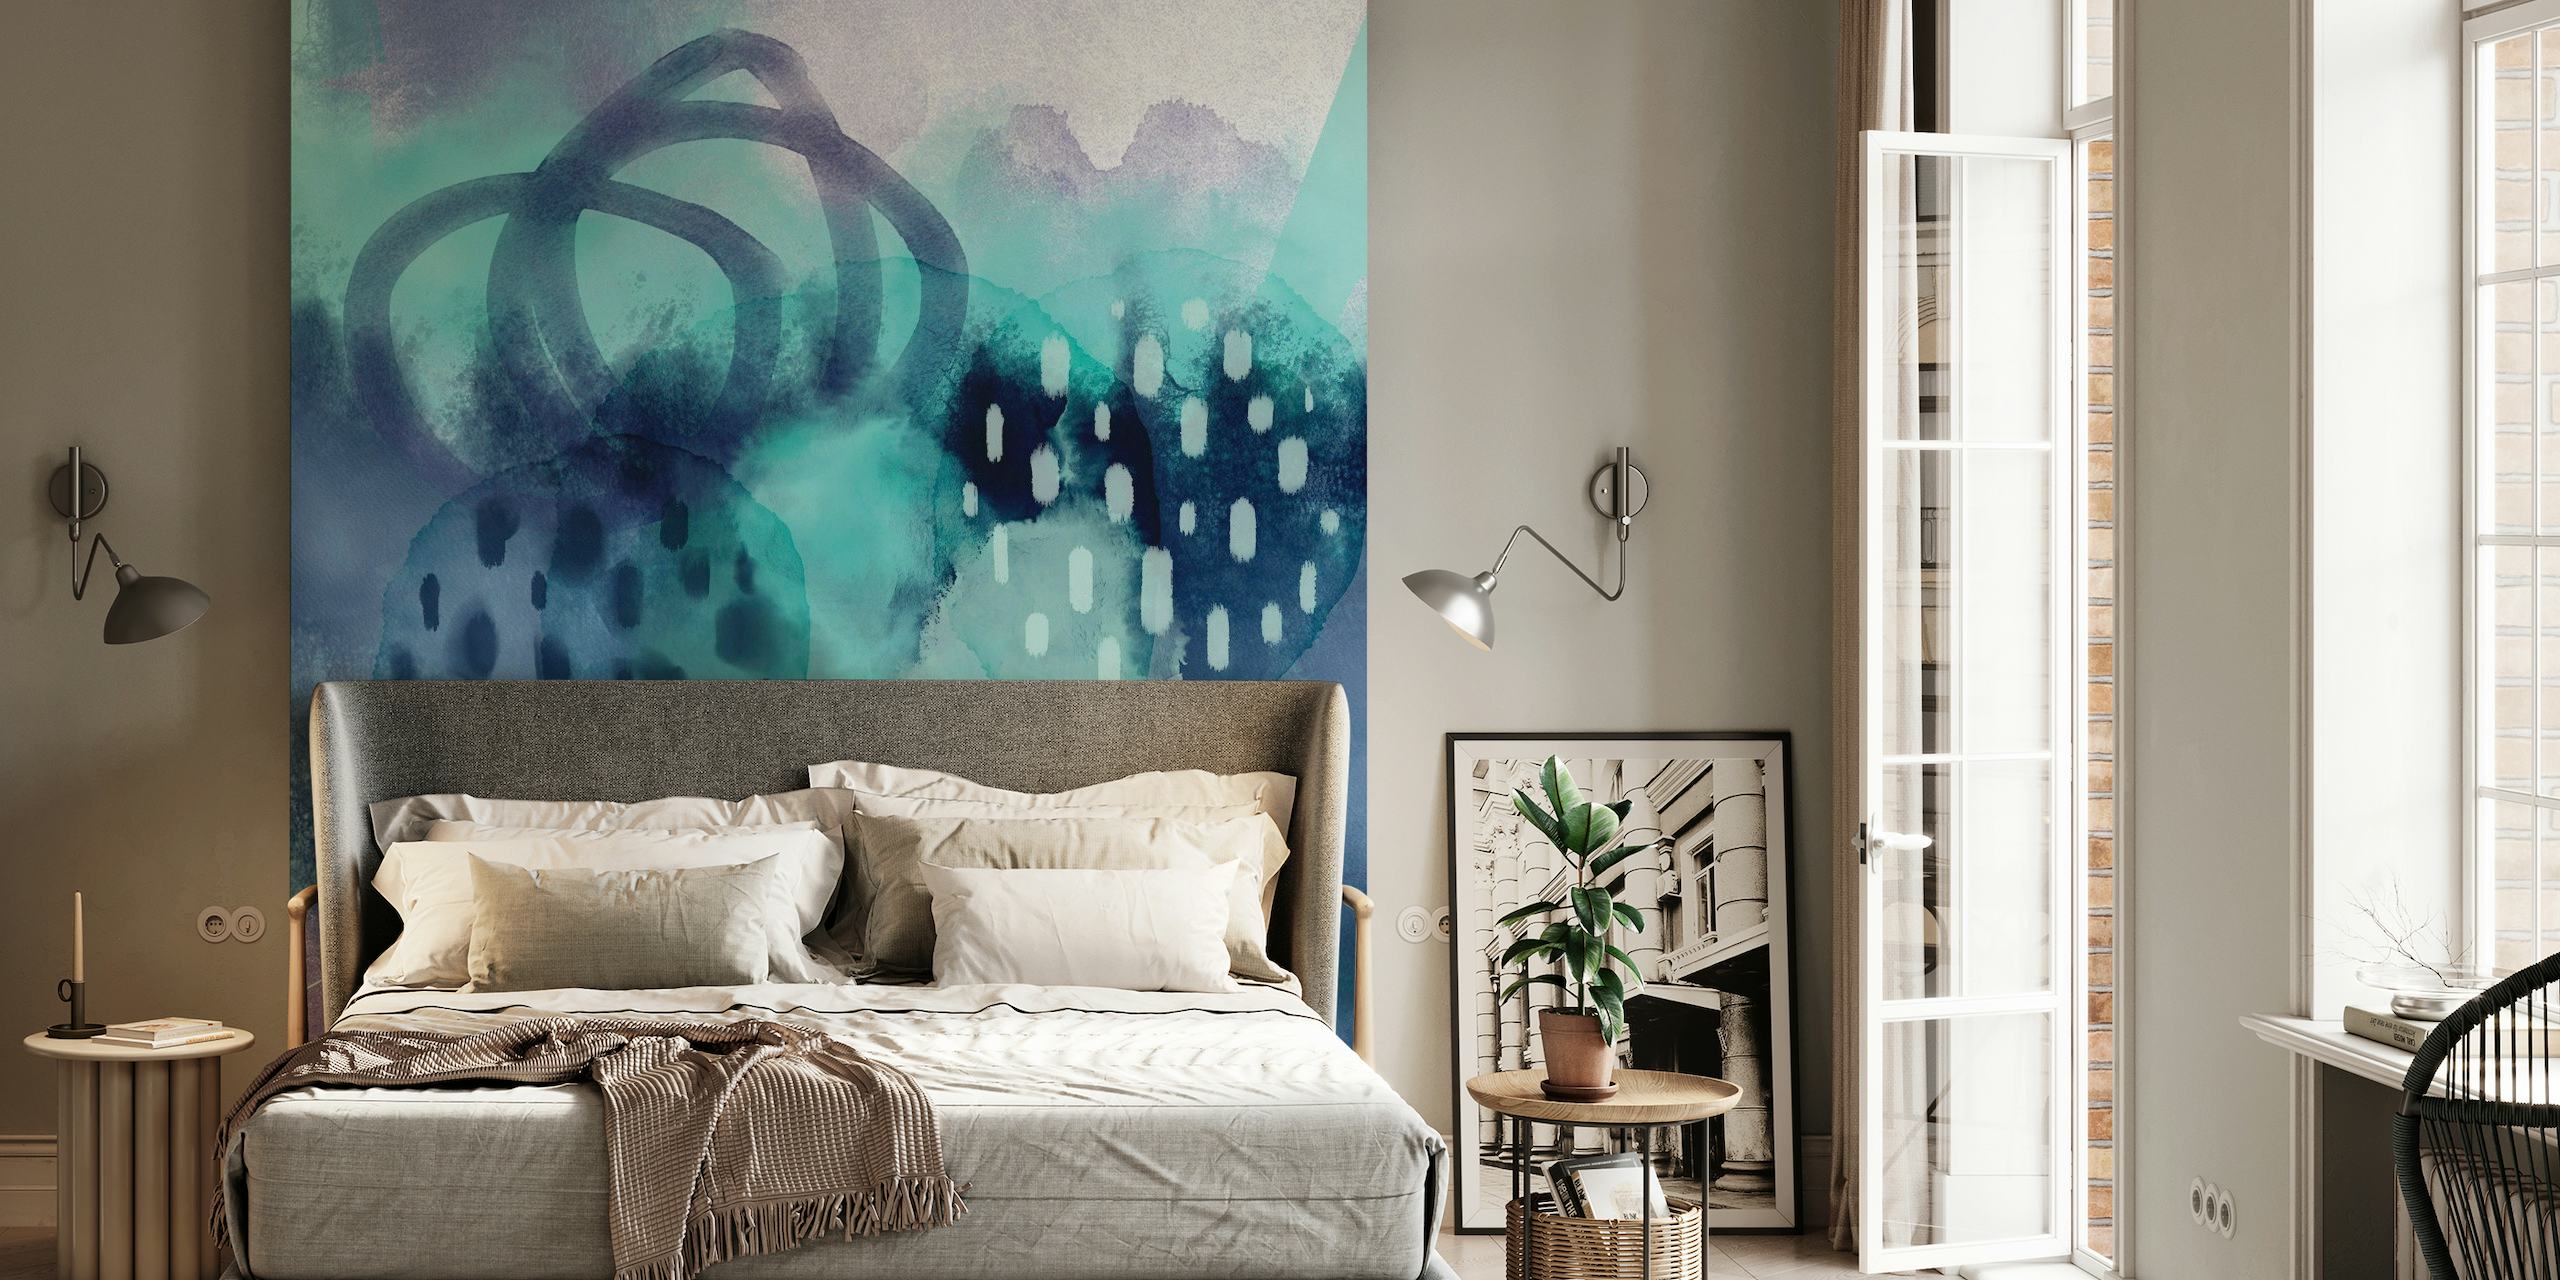 Apstraktna vodenoplava zidna slika u boji s eteričnim teksturama i potezima kista